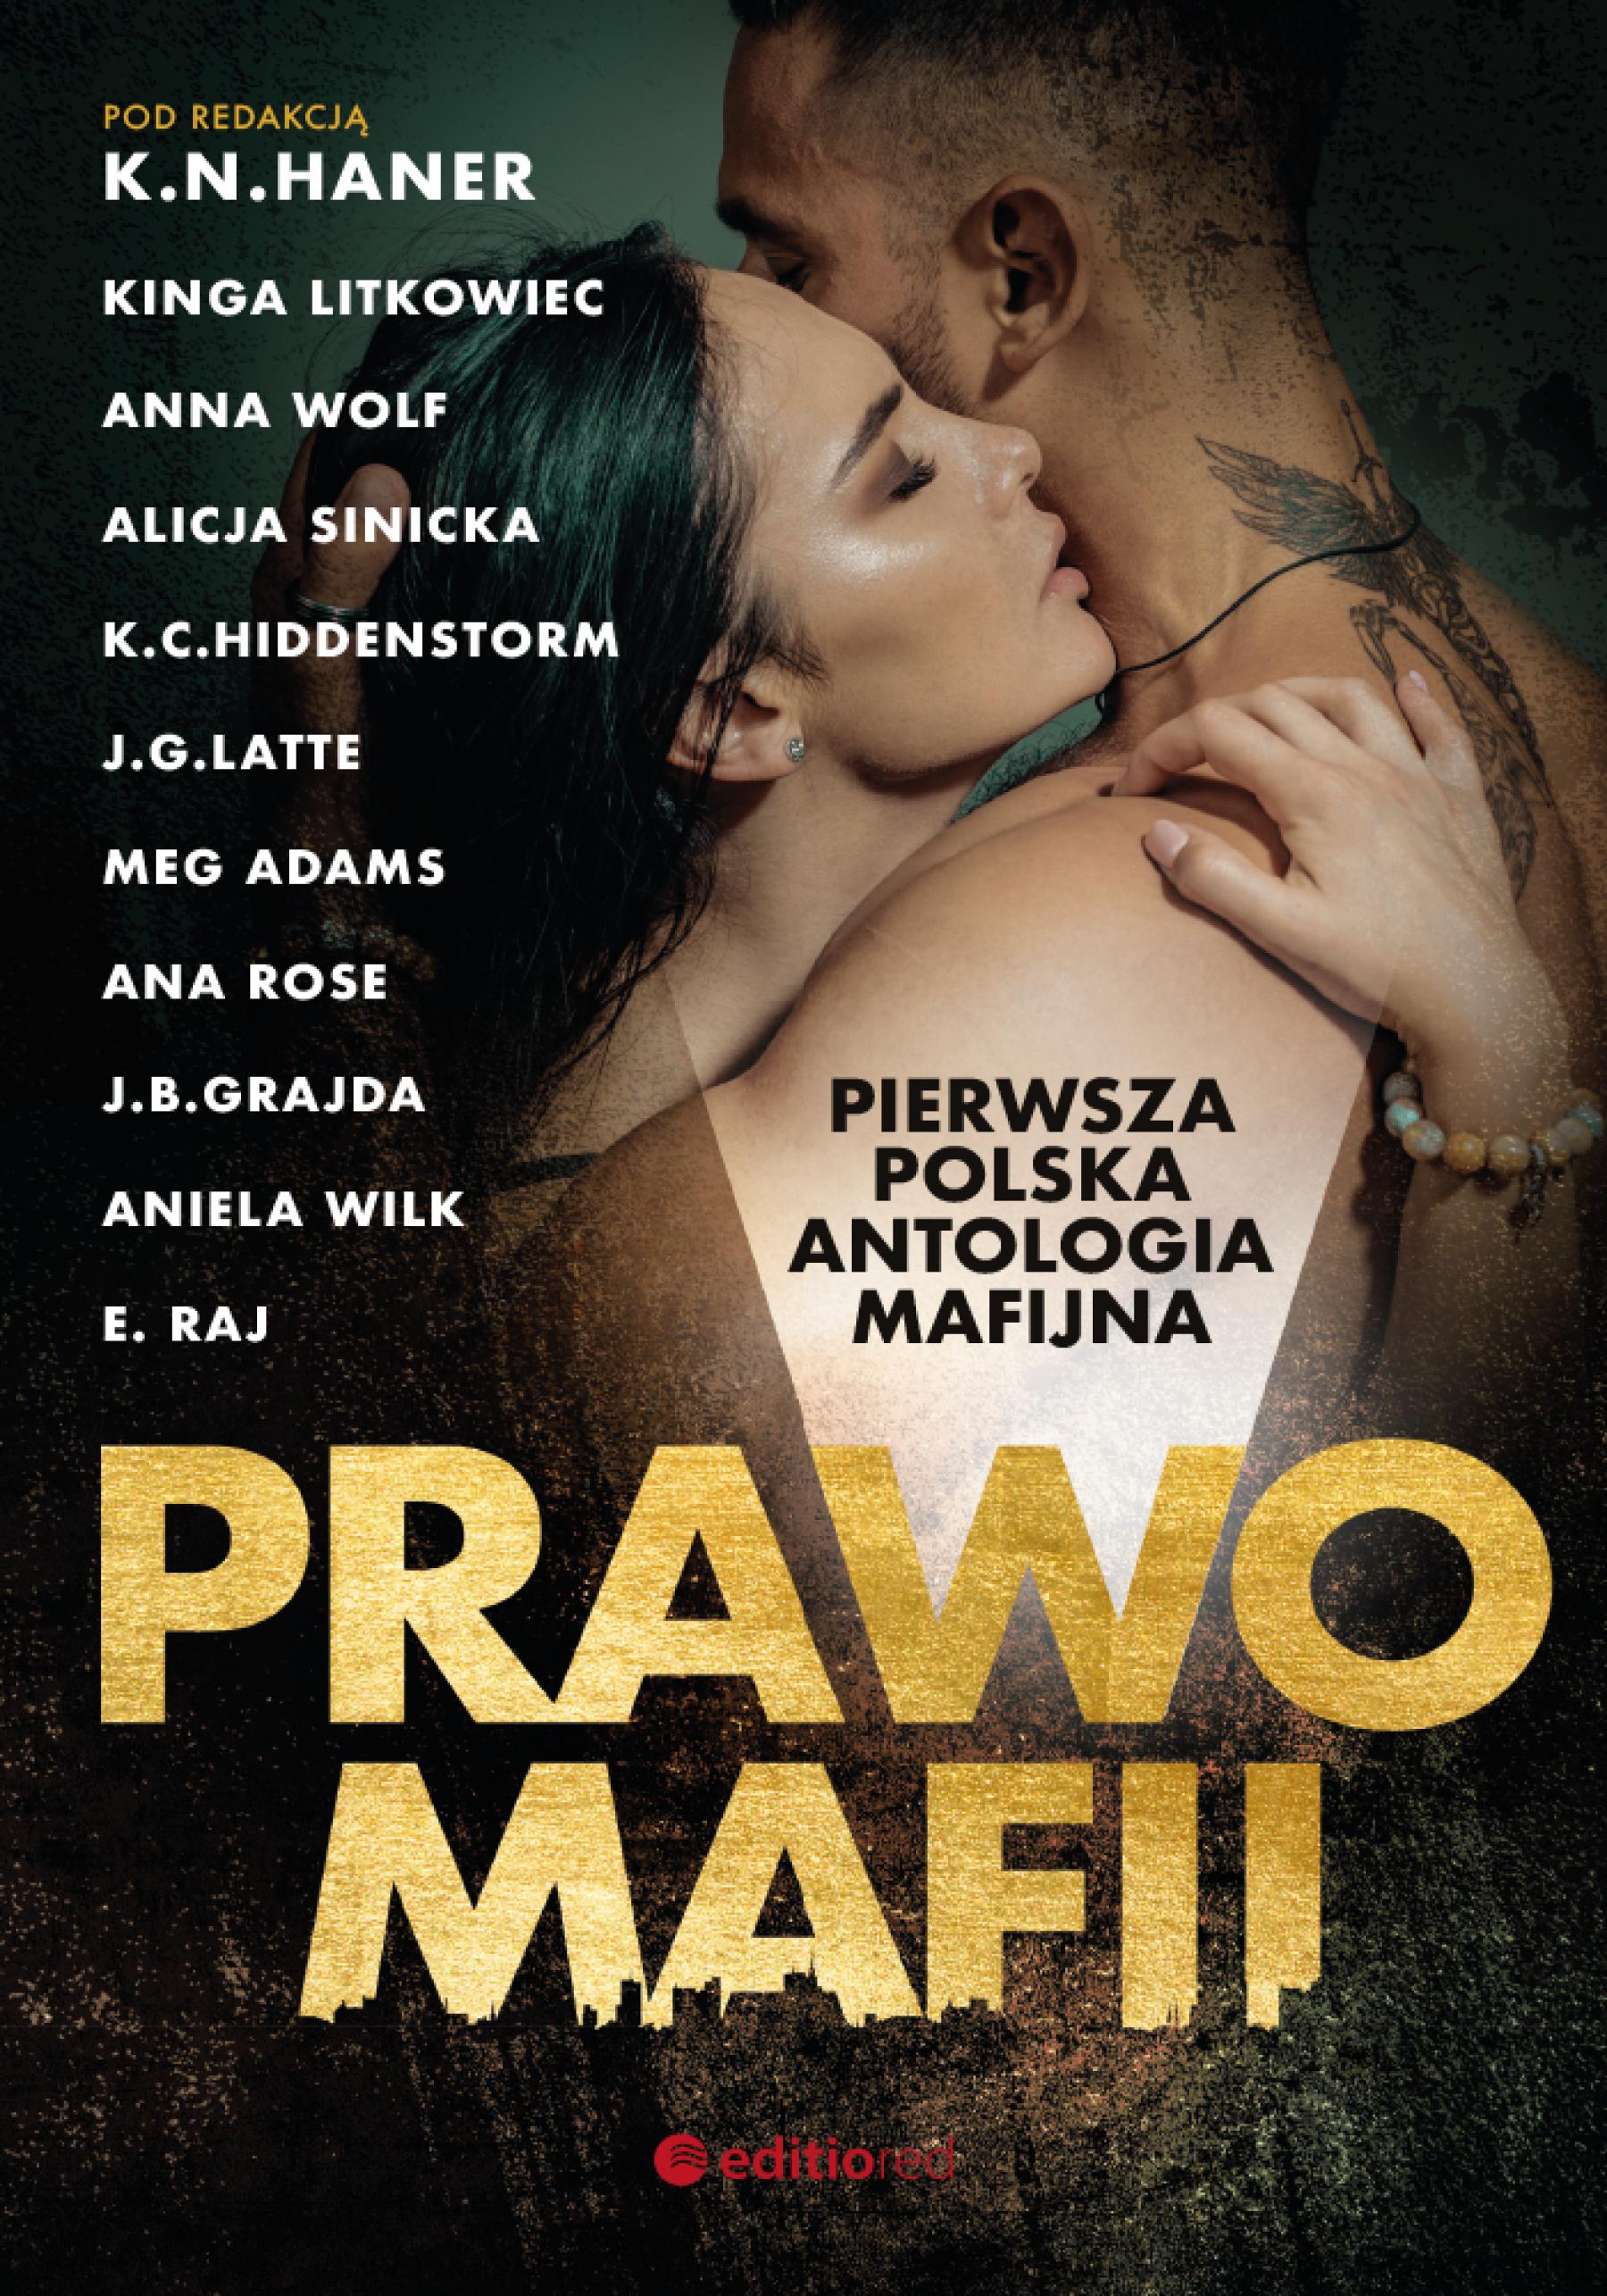 Okładka:Prawo mafii. Pierwsza polska antologia mafijna 